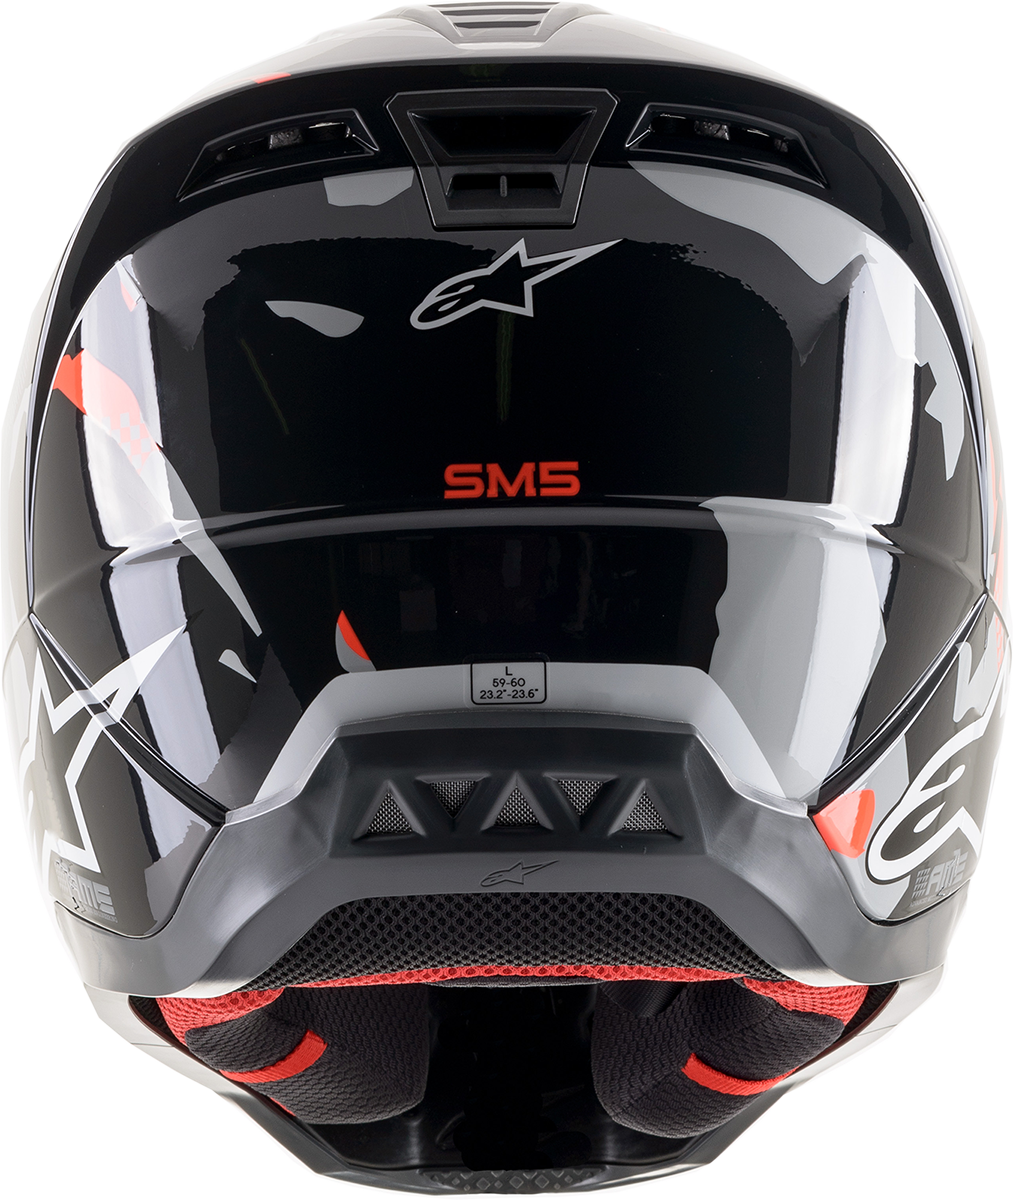 ALPINESTARS SM5 Helmet - Rover - Gray/Red - Large 8303921-1392-LG